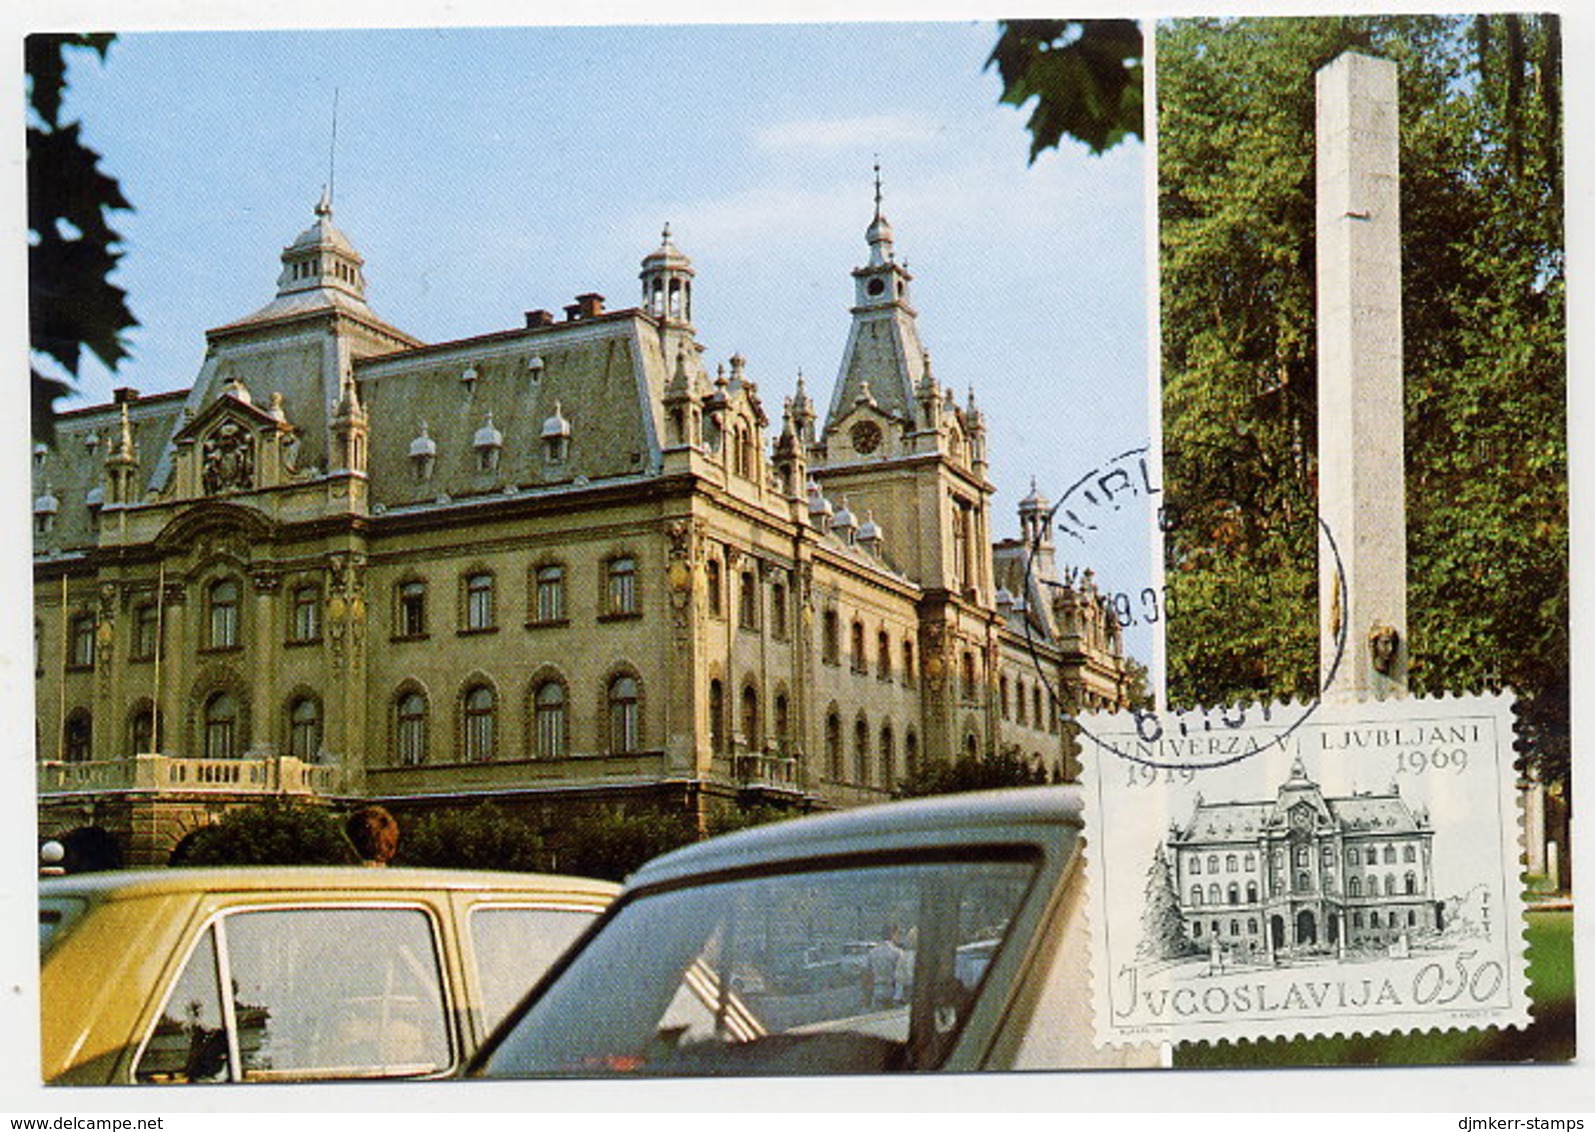 YUGOSLAVIA 1969 Ljubljana University On Maximum Card. Michel 1358 - Maximumkarten